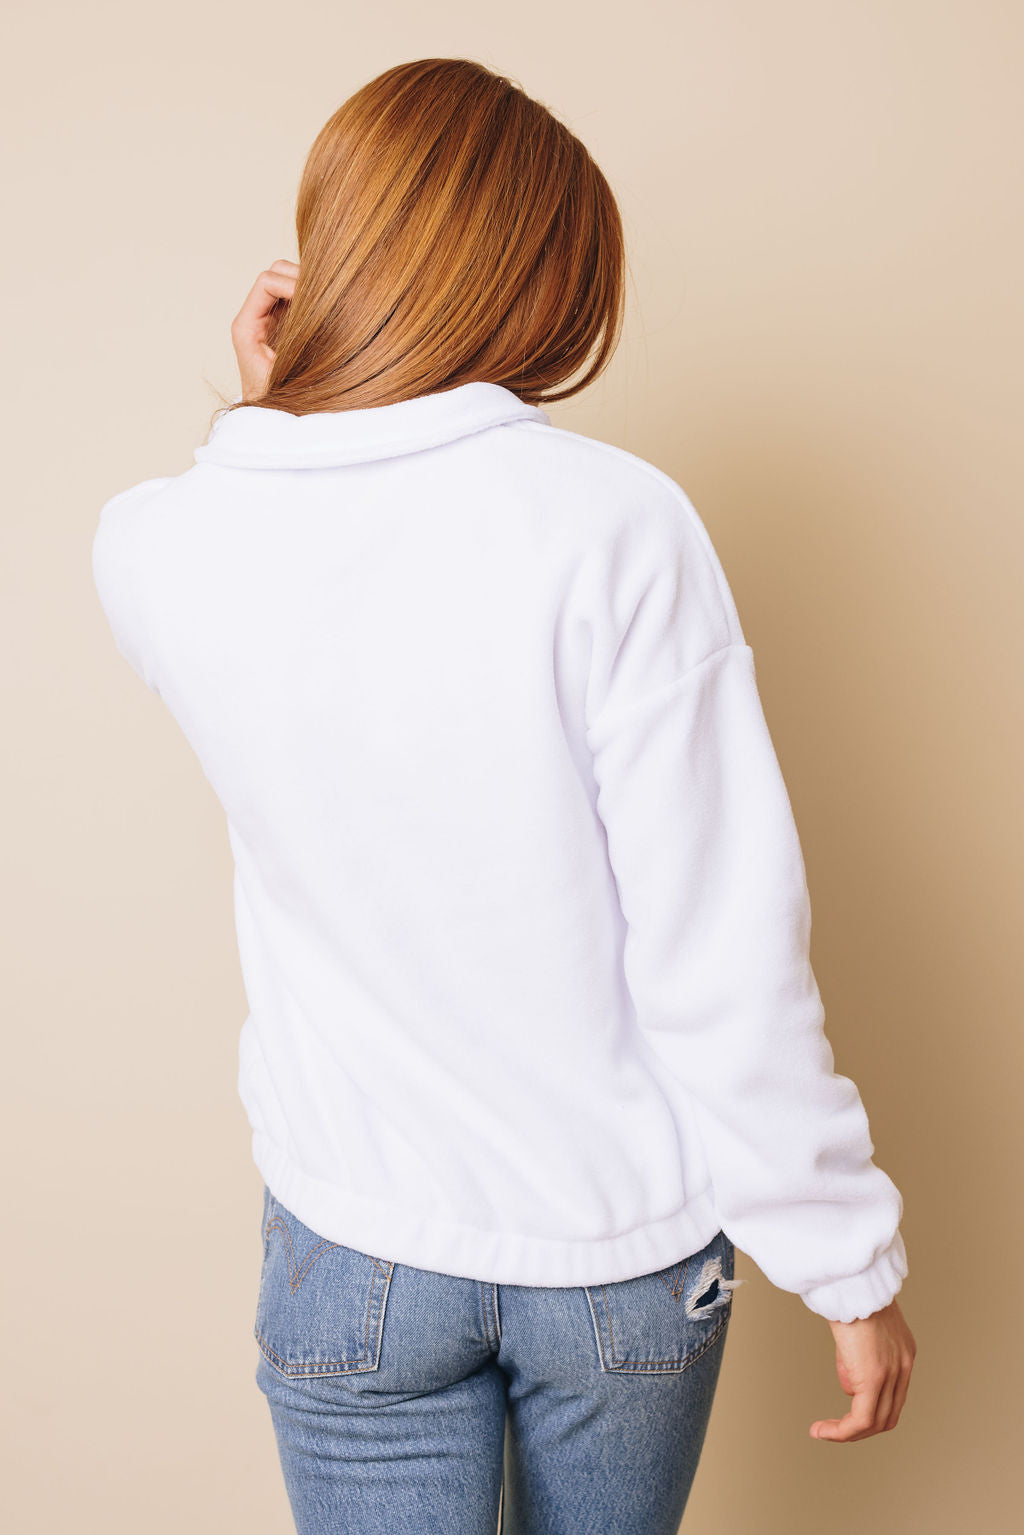 Platt Zipper Fleece Pullover Sweatshirt Stay Warm In Style